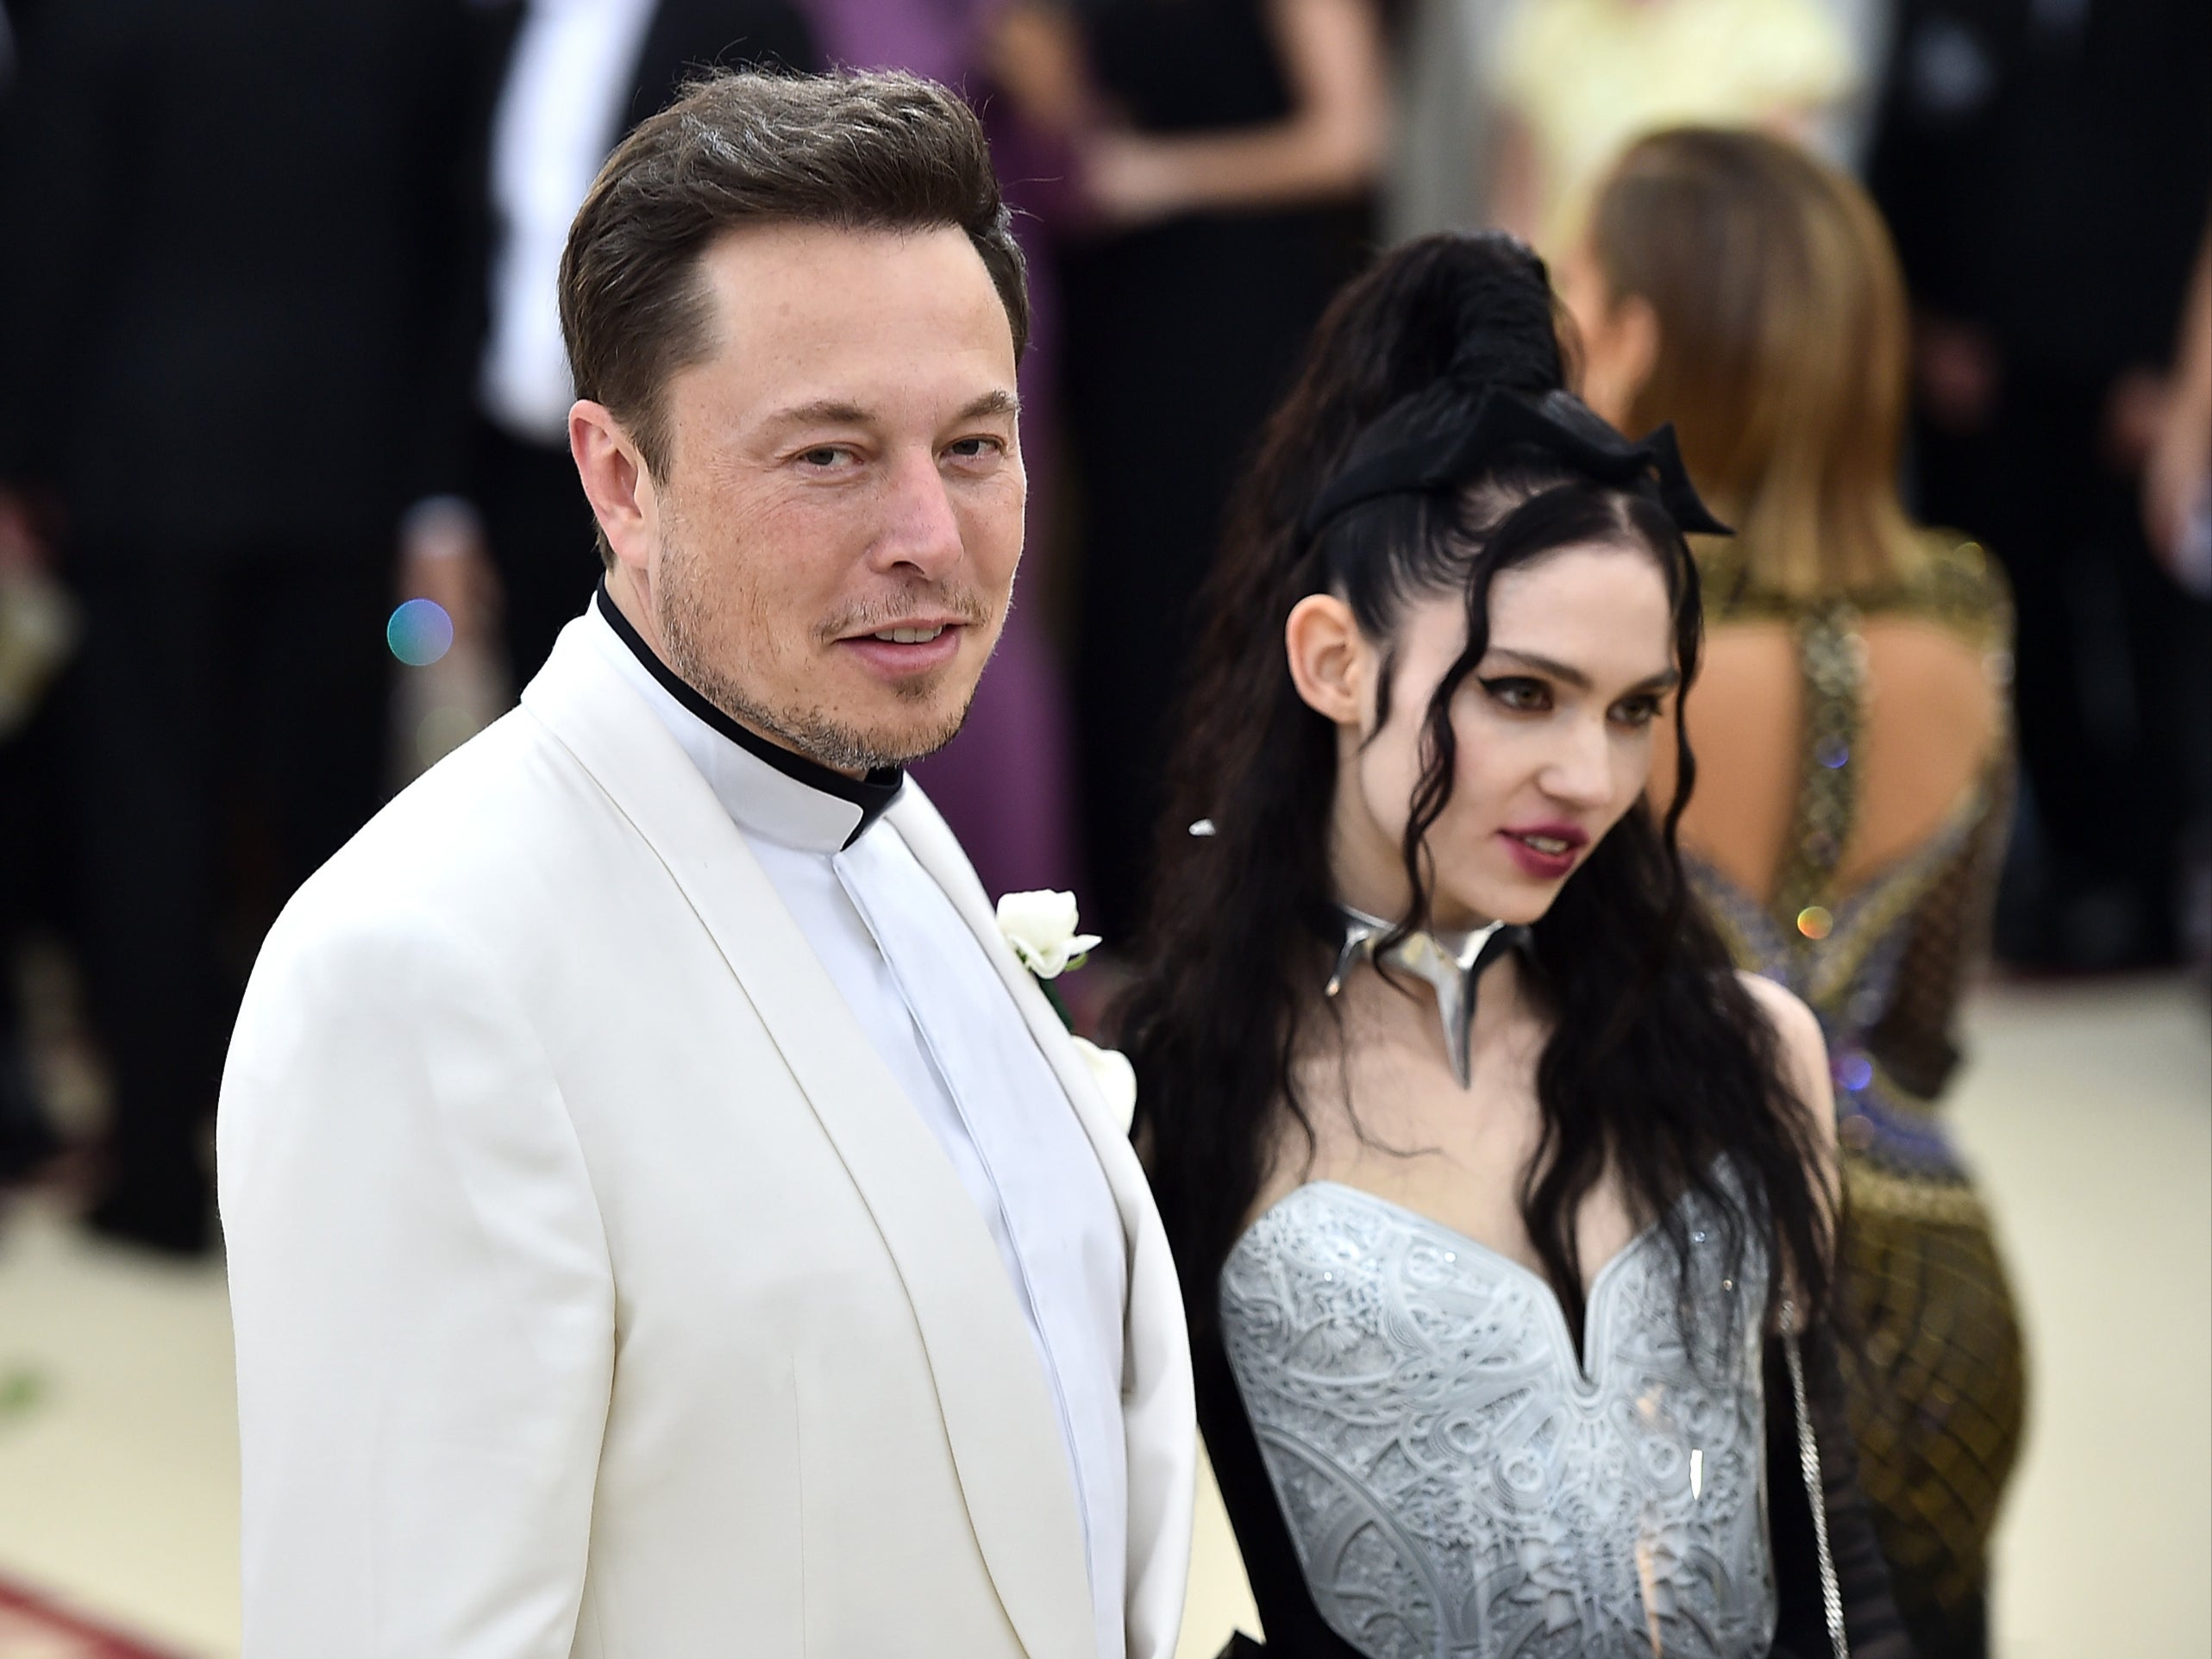 Elon Musk: The Tech Casanova?